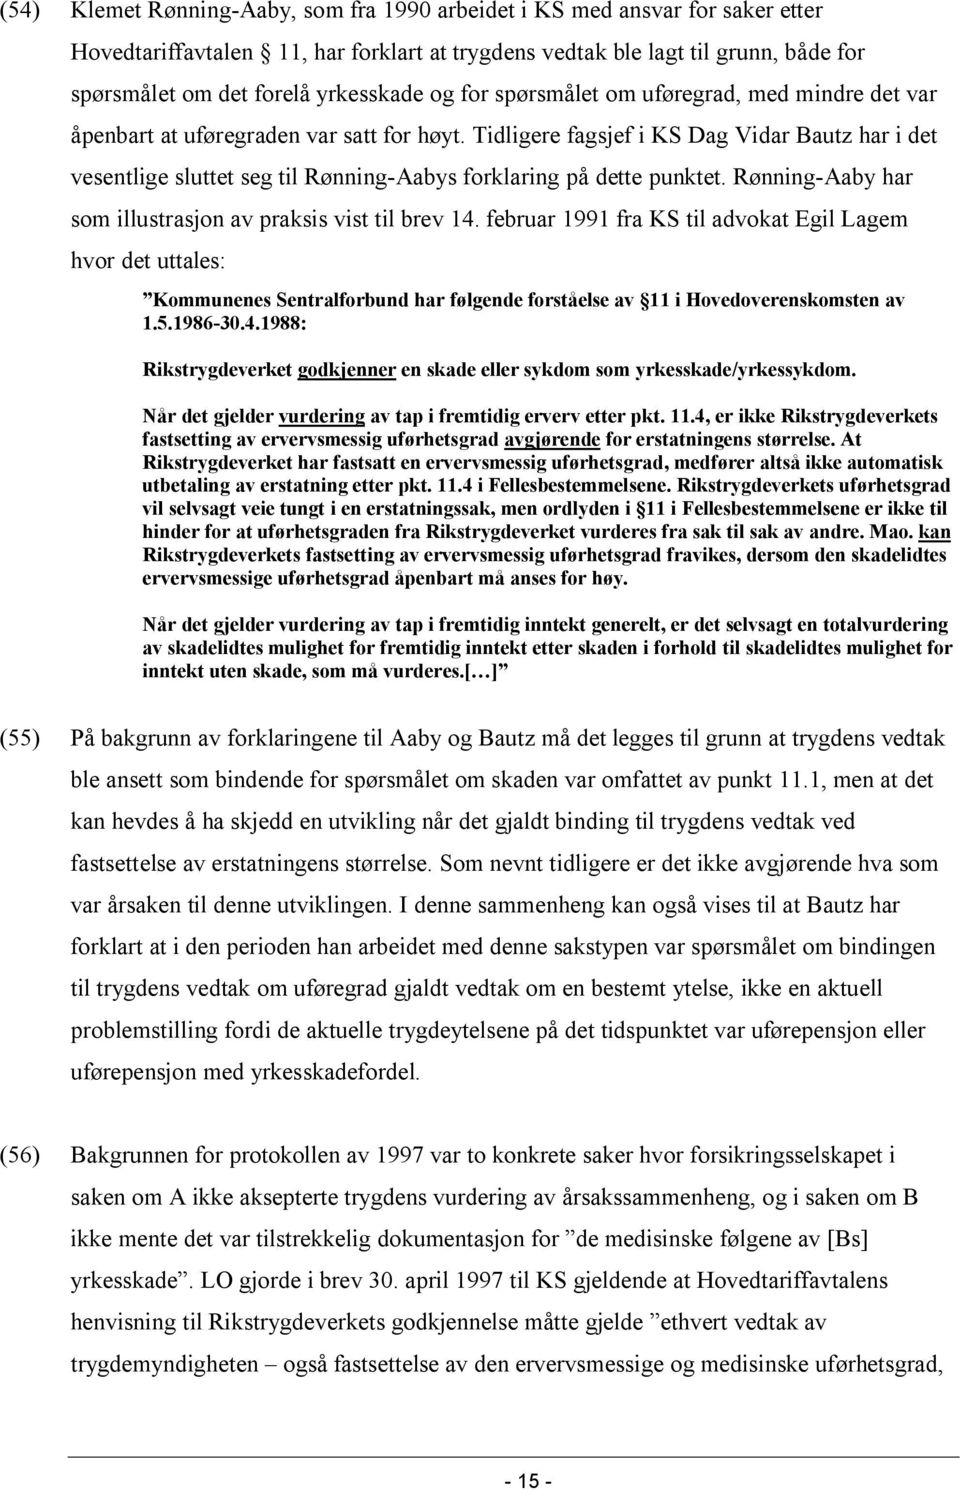 Tidligere fagsjef i KS Dag Vidar Bautz har i det vesentlige sluttet seg til Rønning-Aabys forklaring på dette punktet. Rønning-Aaby har som illustrasjon av praksis vist til brev 14.